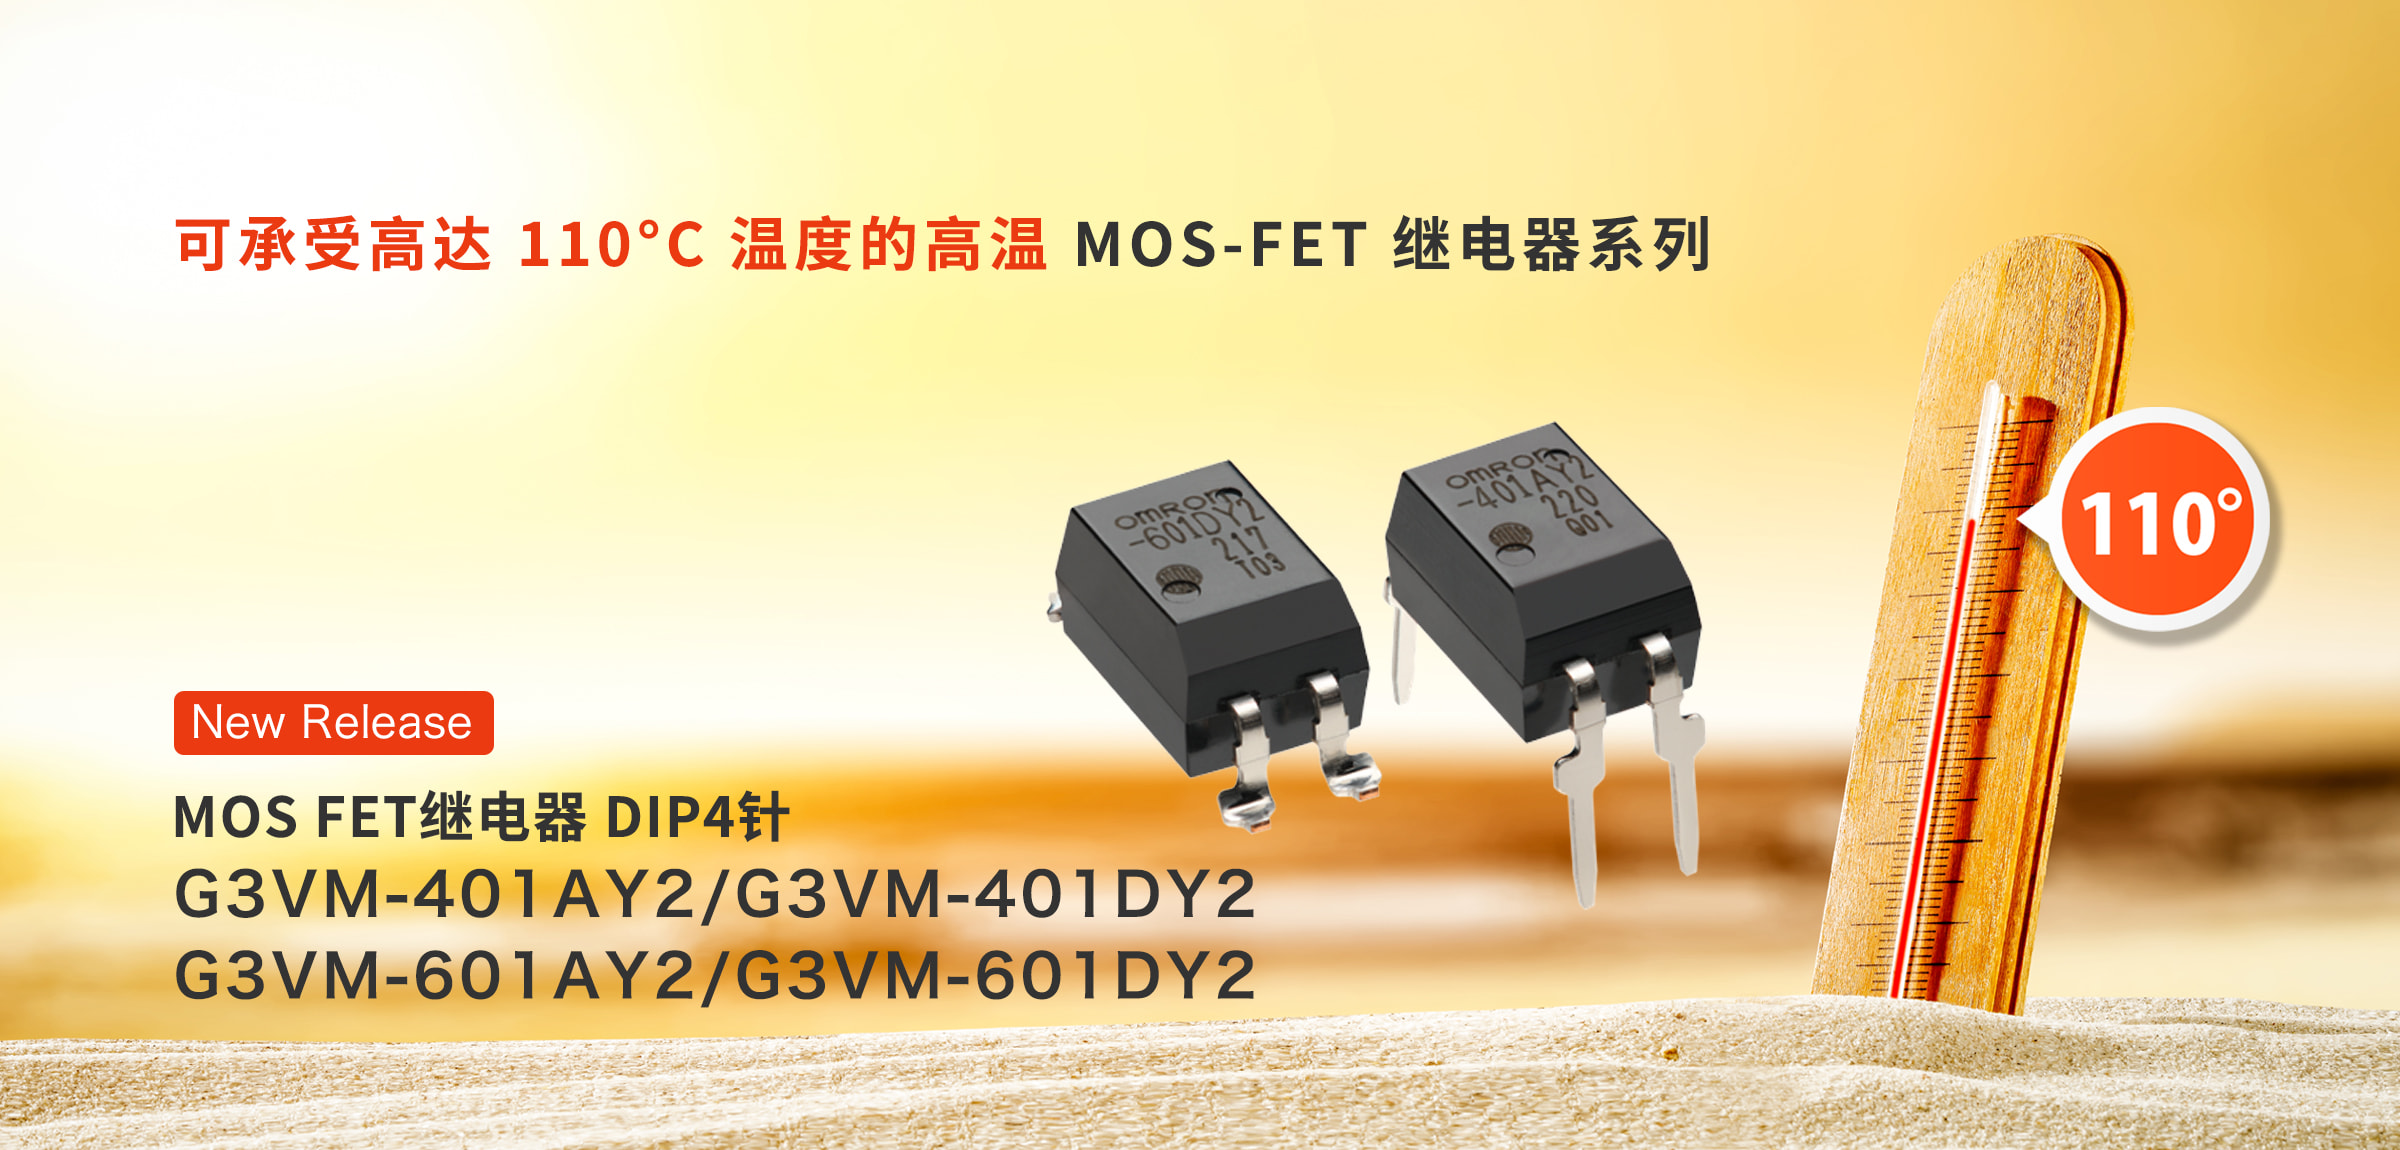 可承受高达 110°C 温度的高温 MOS-FET 继电器系列 MOS FET继电器 DIP4针G3VM-401AY2/G3VM-401DY2, G3VM-601AY2/G3VM-601DY2